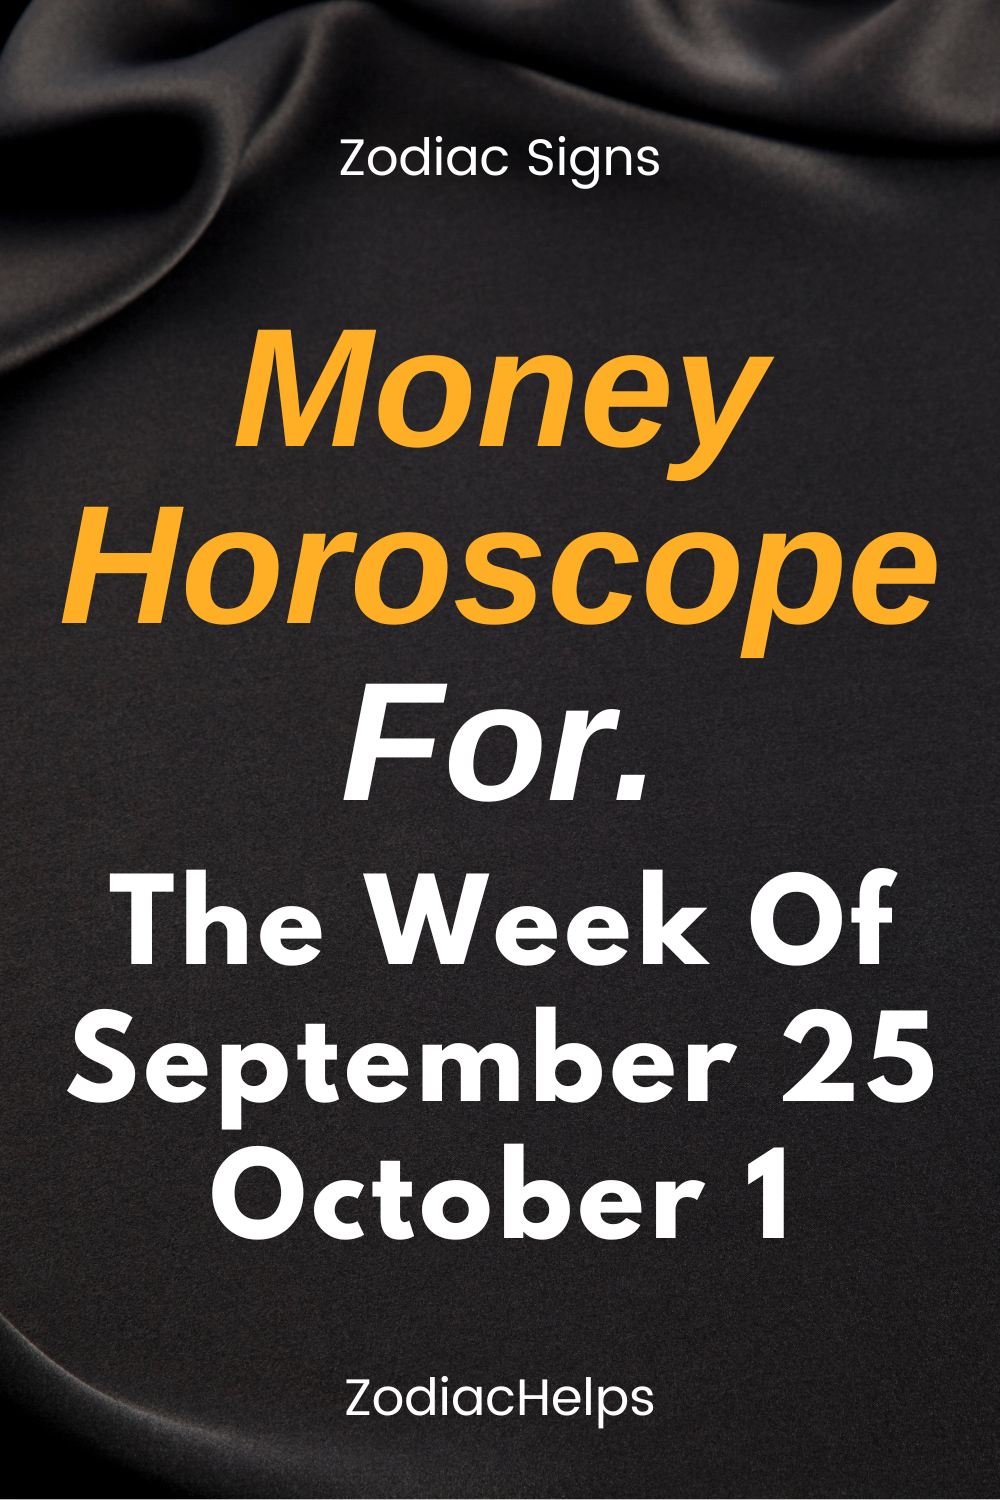 Money Horoscope For The Week Of September 25 October 1.